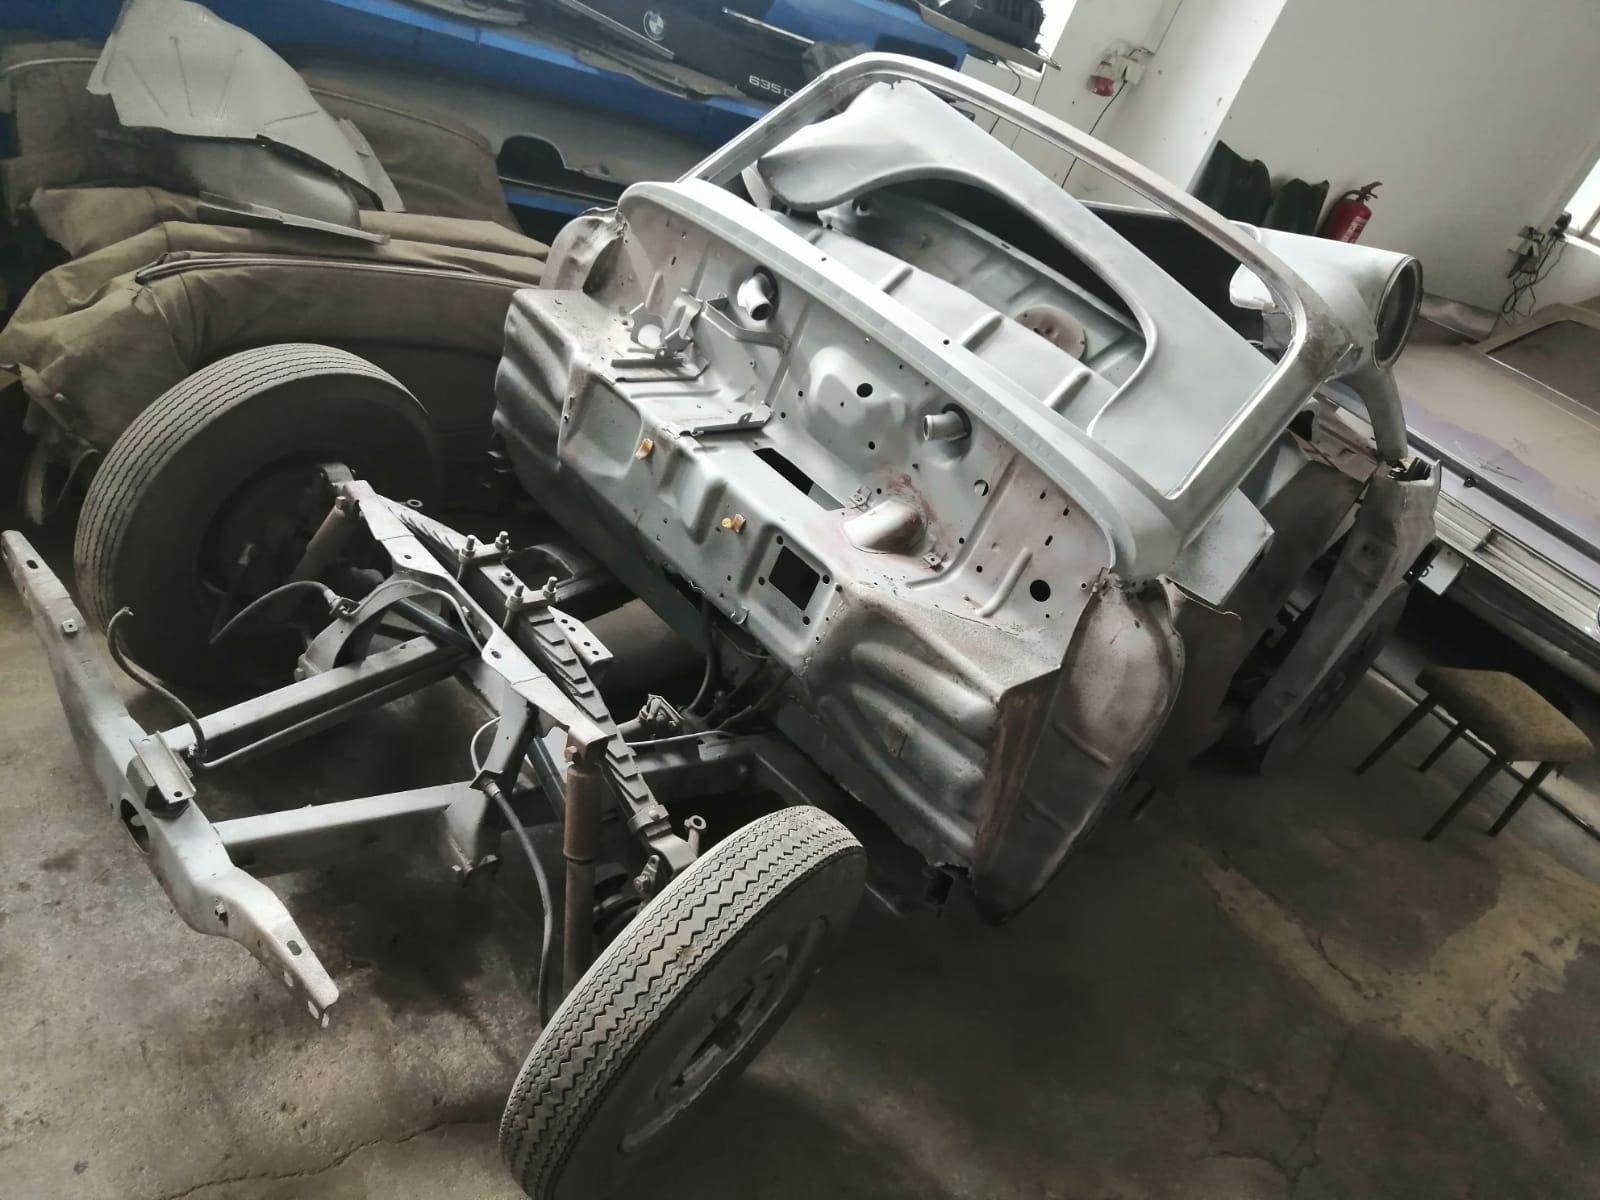 restauration restaurierung wartburg 311 cabrio karosserie